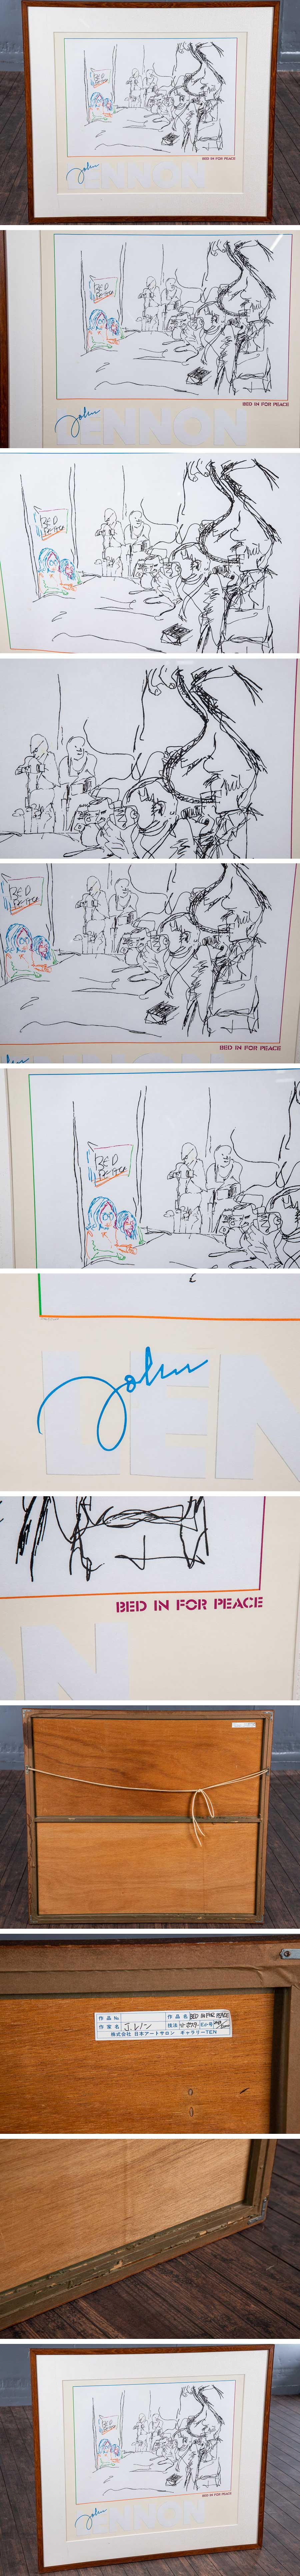 超激得新作『 ジョン・レノン 「 BED IN FOR PEACE 」 2469/5000 アクリル板 額装 S241 』 インテリア リトグラフ 絵画 リビング 石版画、リトグラフ